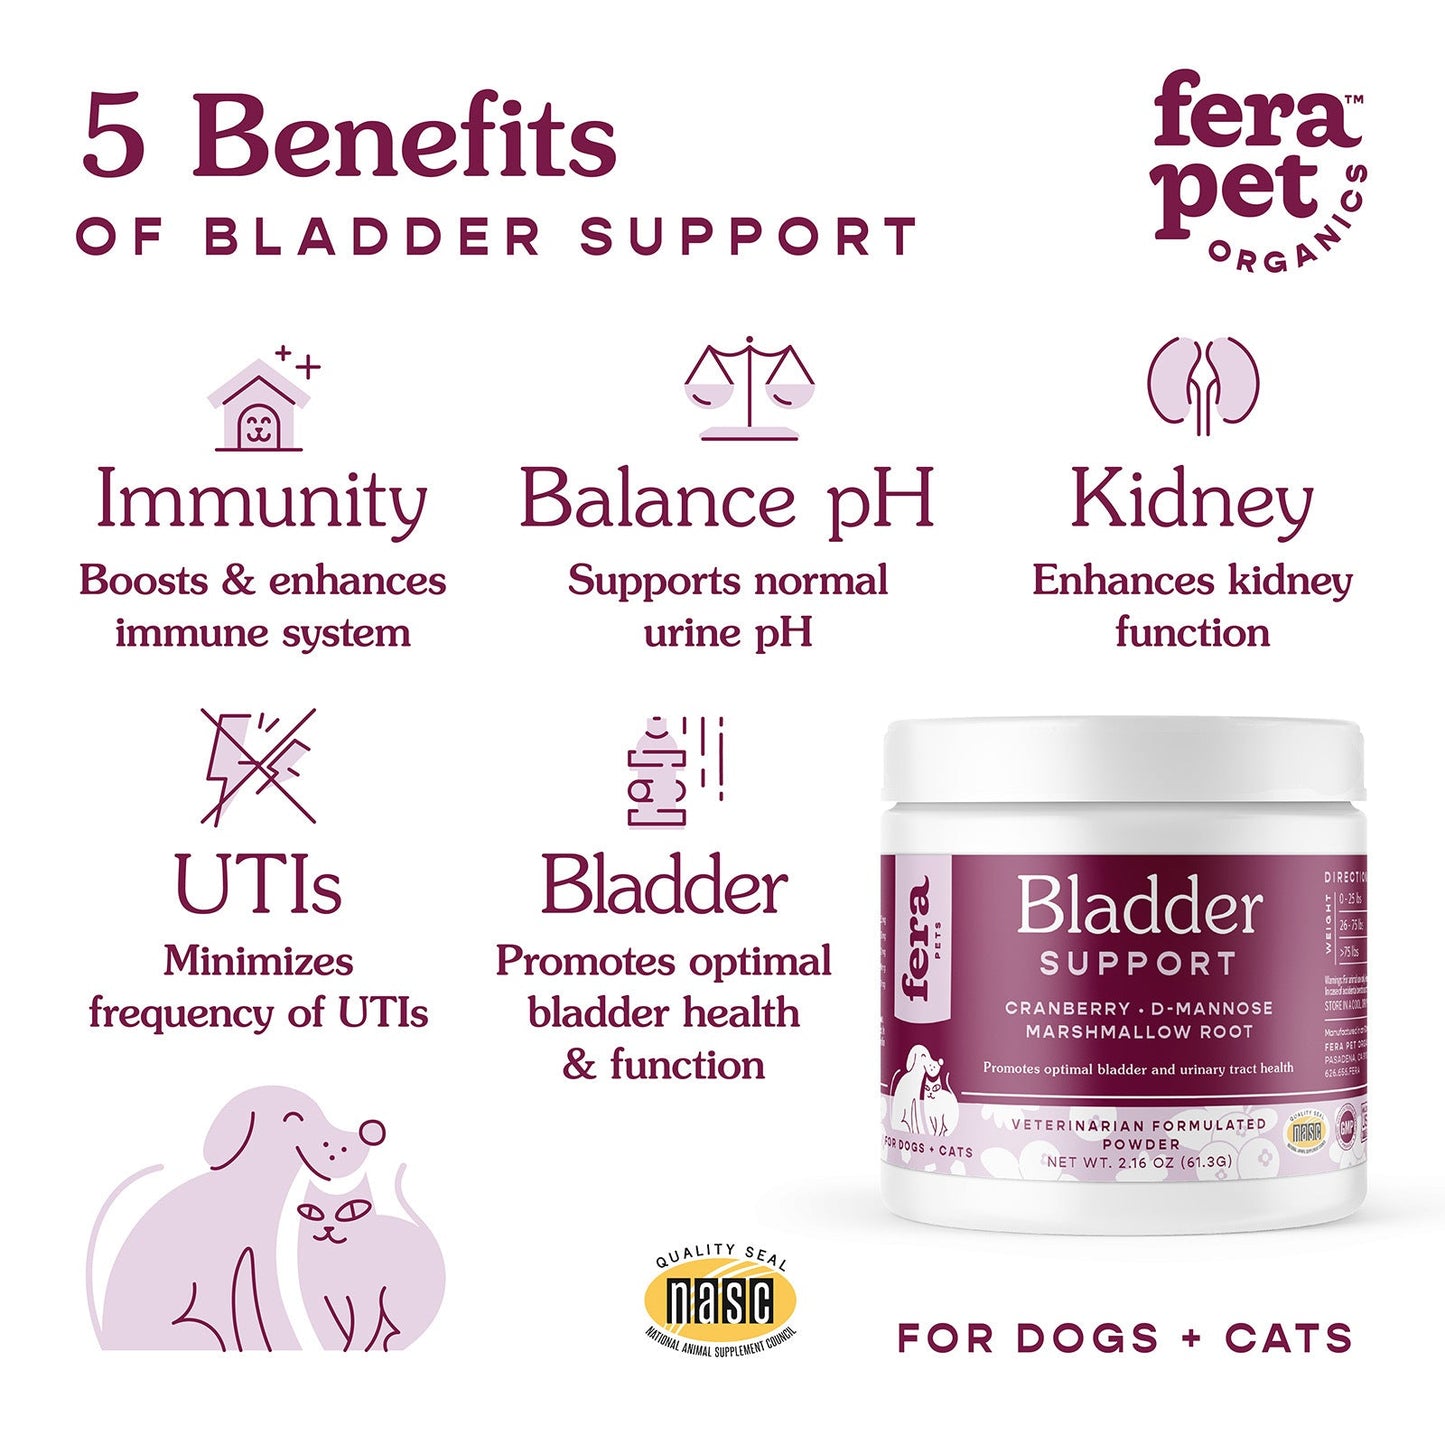 Fera Pet Organics Bladder Support Supplement for Dogs & Cats, 2.1oz